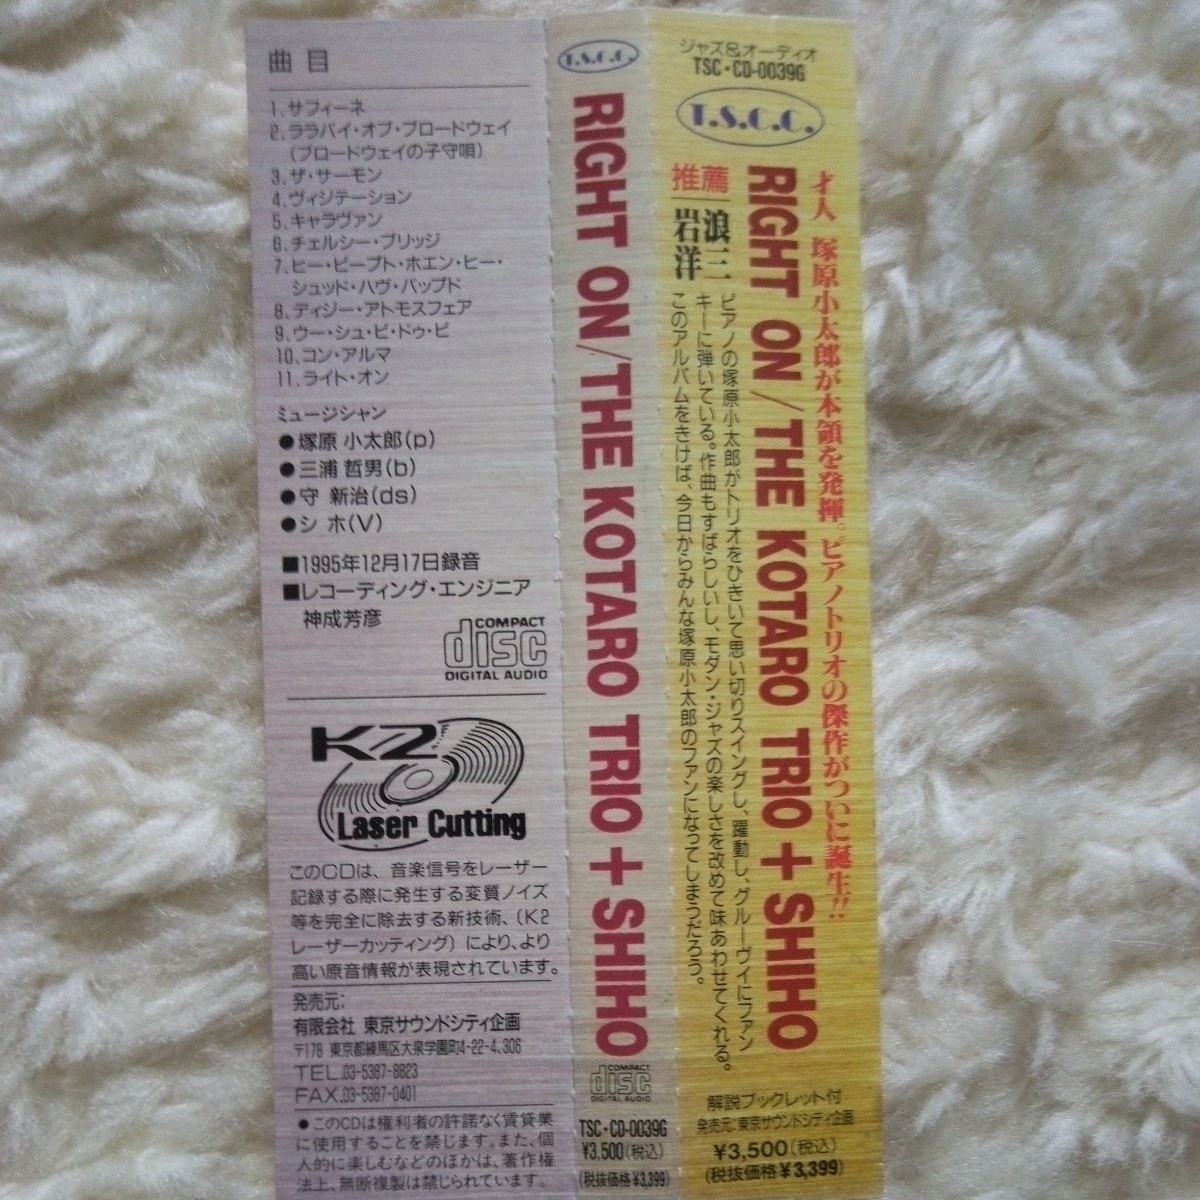 RIGHT.ON.THE.KOTARO+SHIHO　塚原小太郎(P)三浦哲男(b)守新治(ds)シホ(V) K2レーザーカッティング　ゴールドCD TSC-CD-0039G